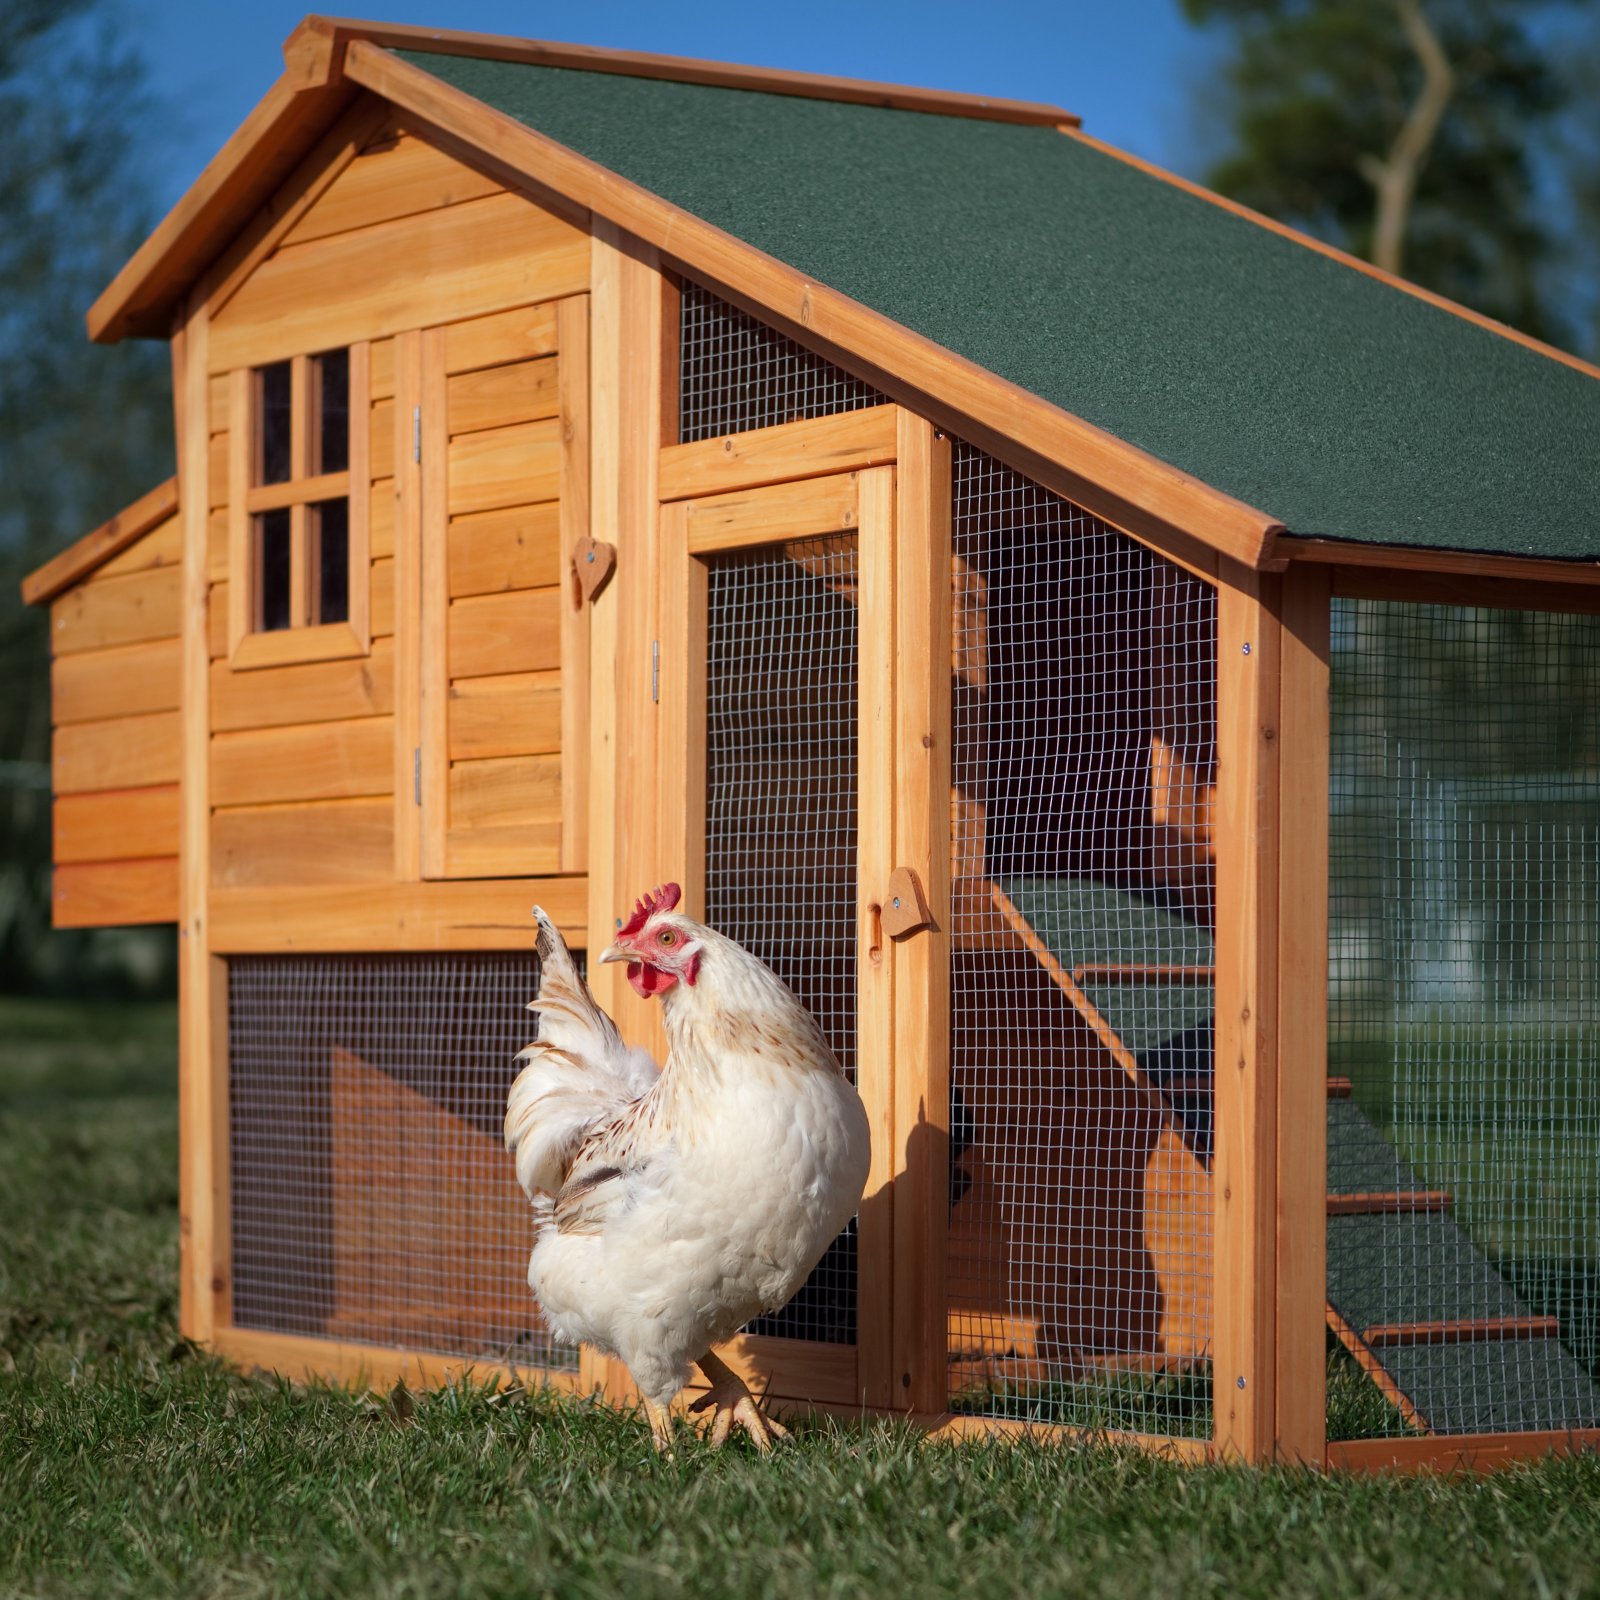 Get chicken house los feliz